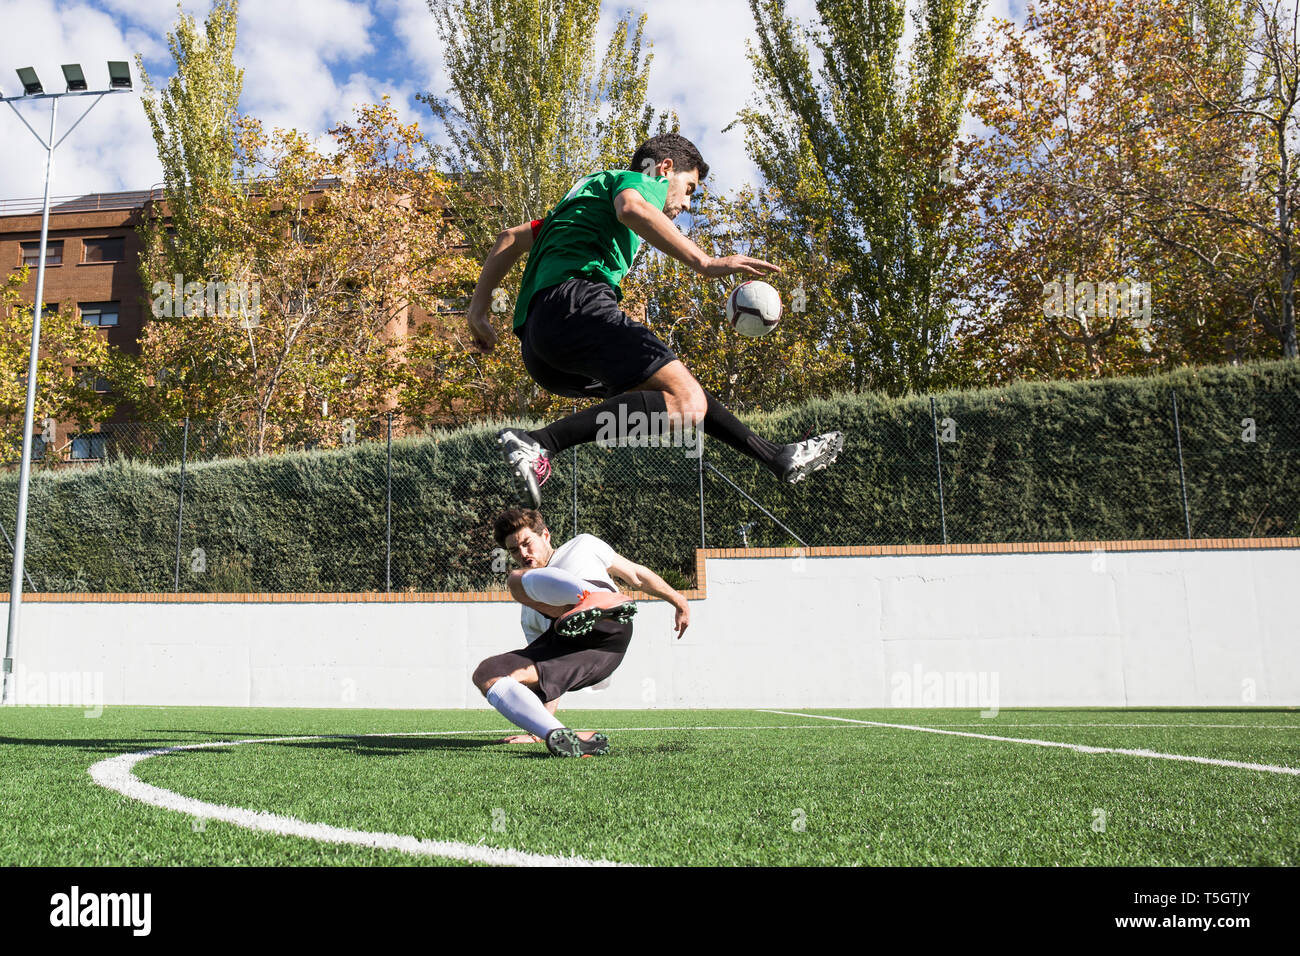 Determinato giocatore di football calci palla sul campo overjumping player sul terreno Foto Stock